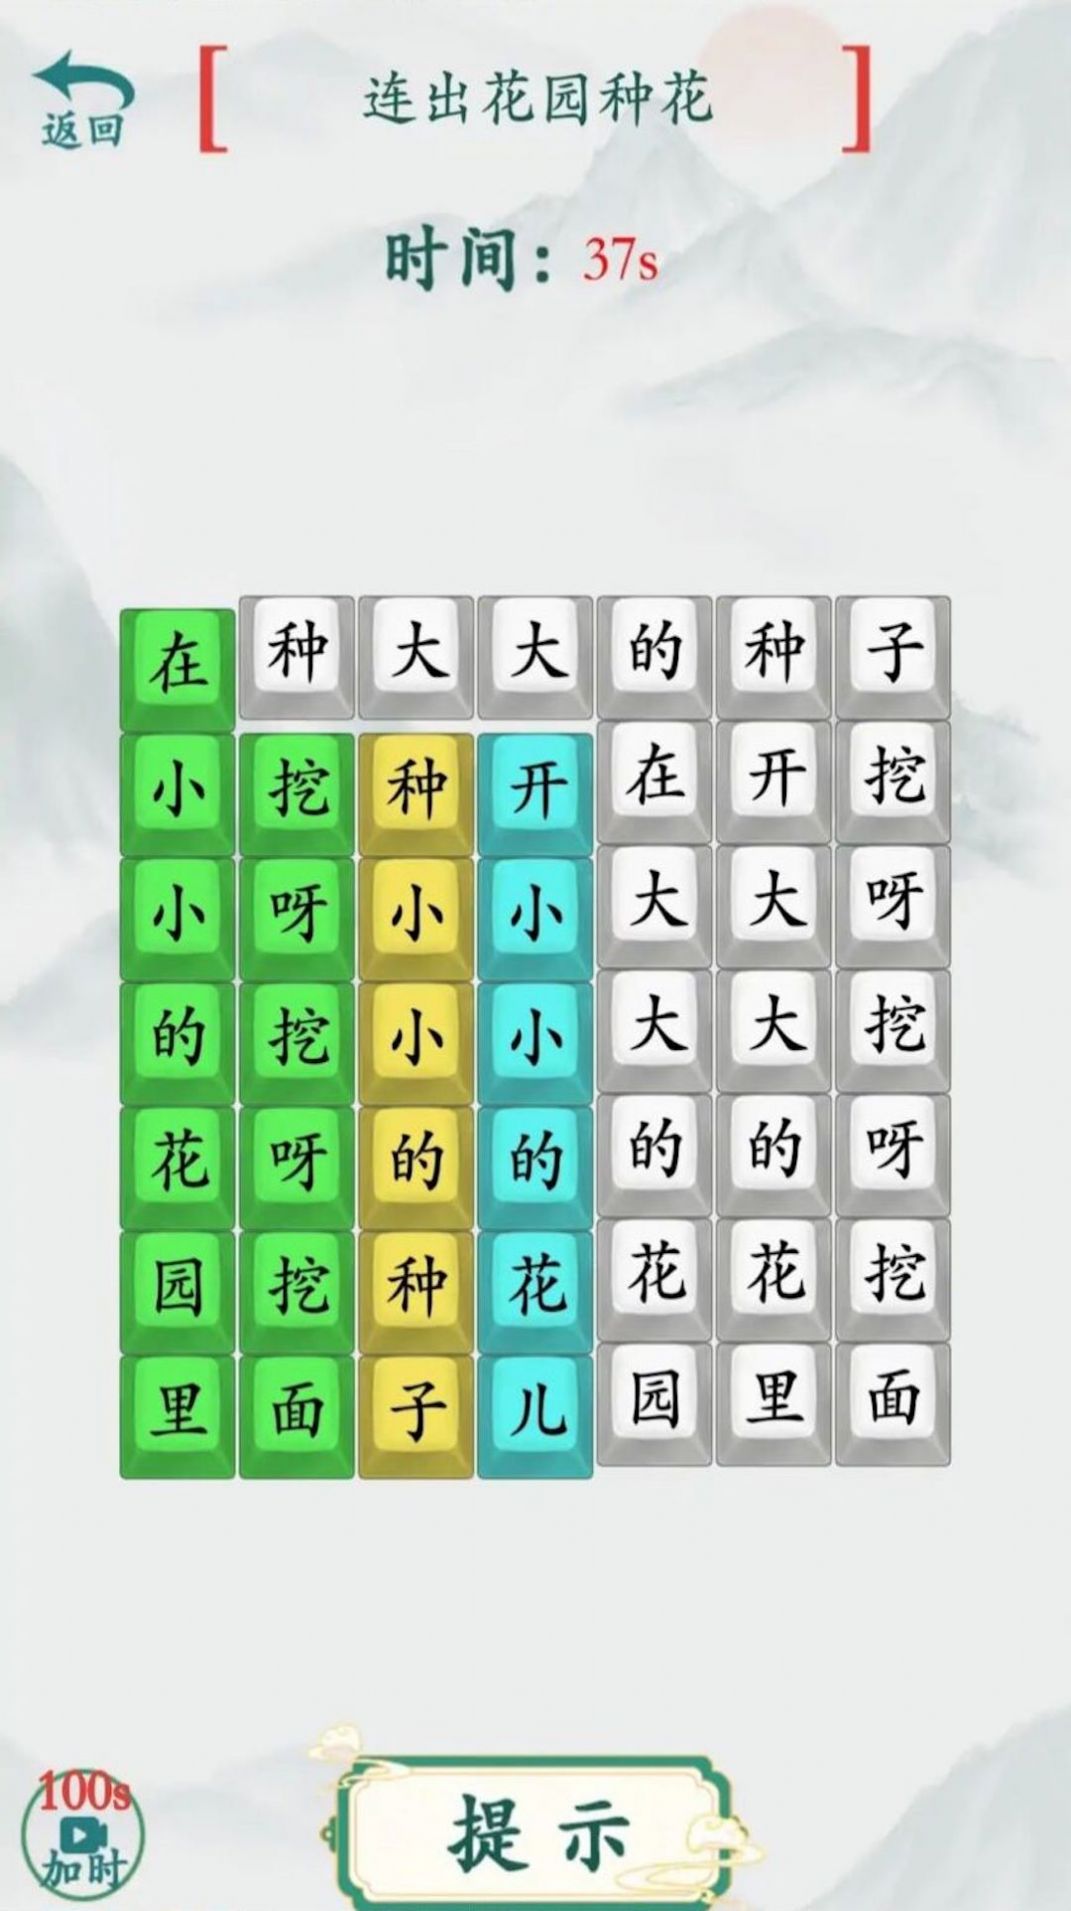 全民烧脑汉字游戏安卓版  v1.0图1